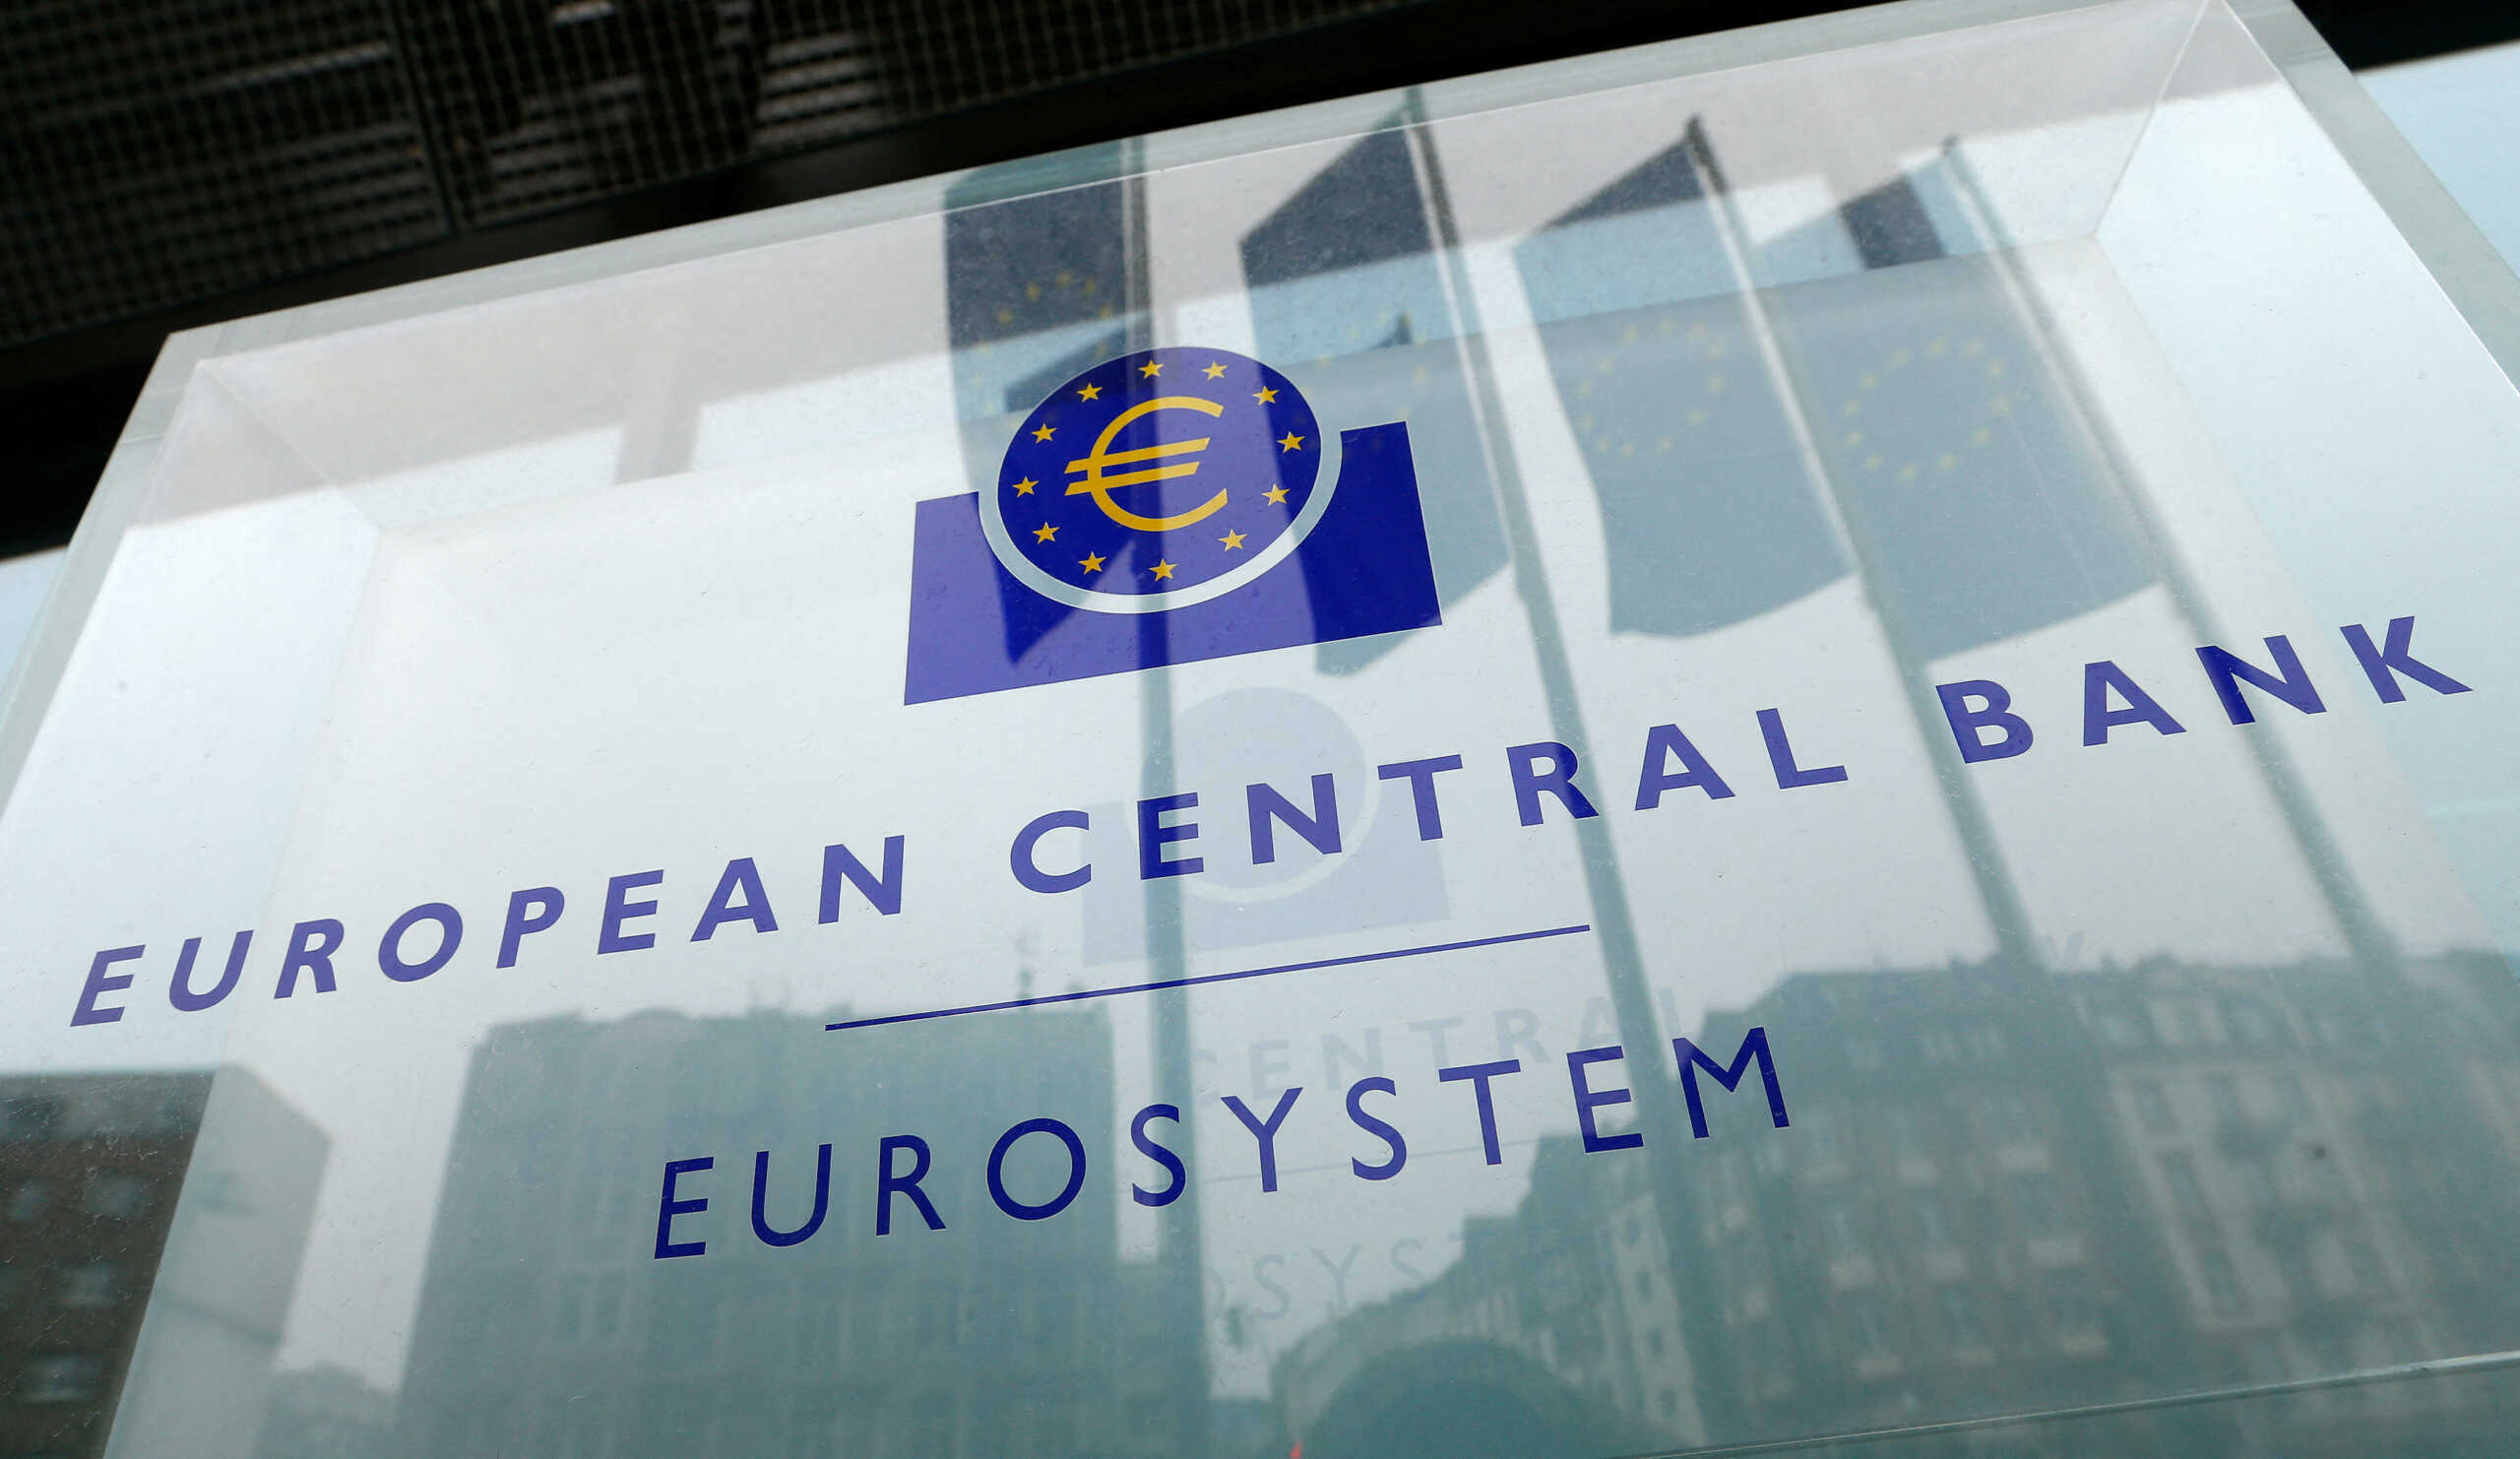 ΕΚΤ: Συνεδριάζει το Εποπτικό Συμβούλιο μετά την κρίση στην Credit Suisse και την πίεση στις τράπεζες